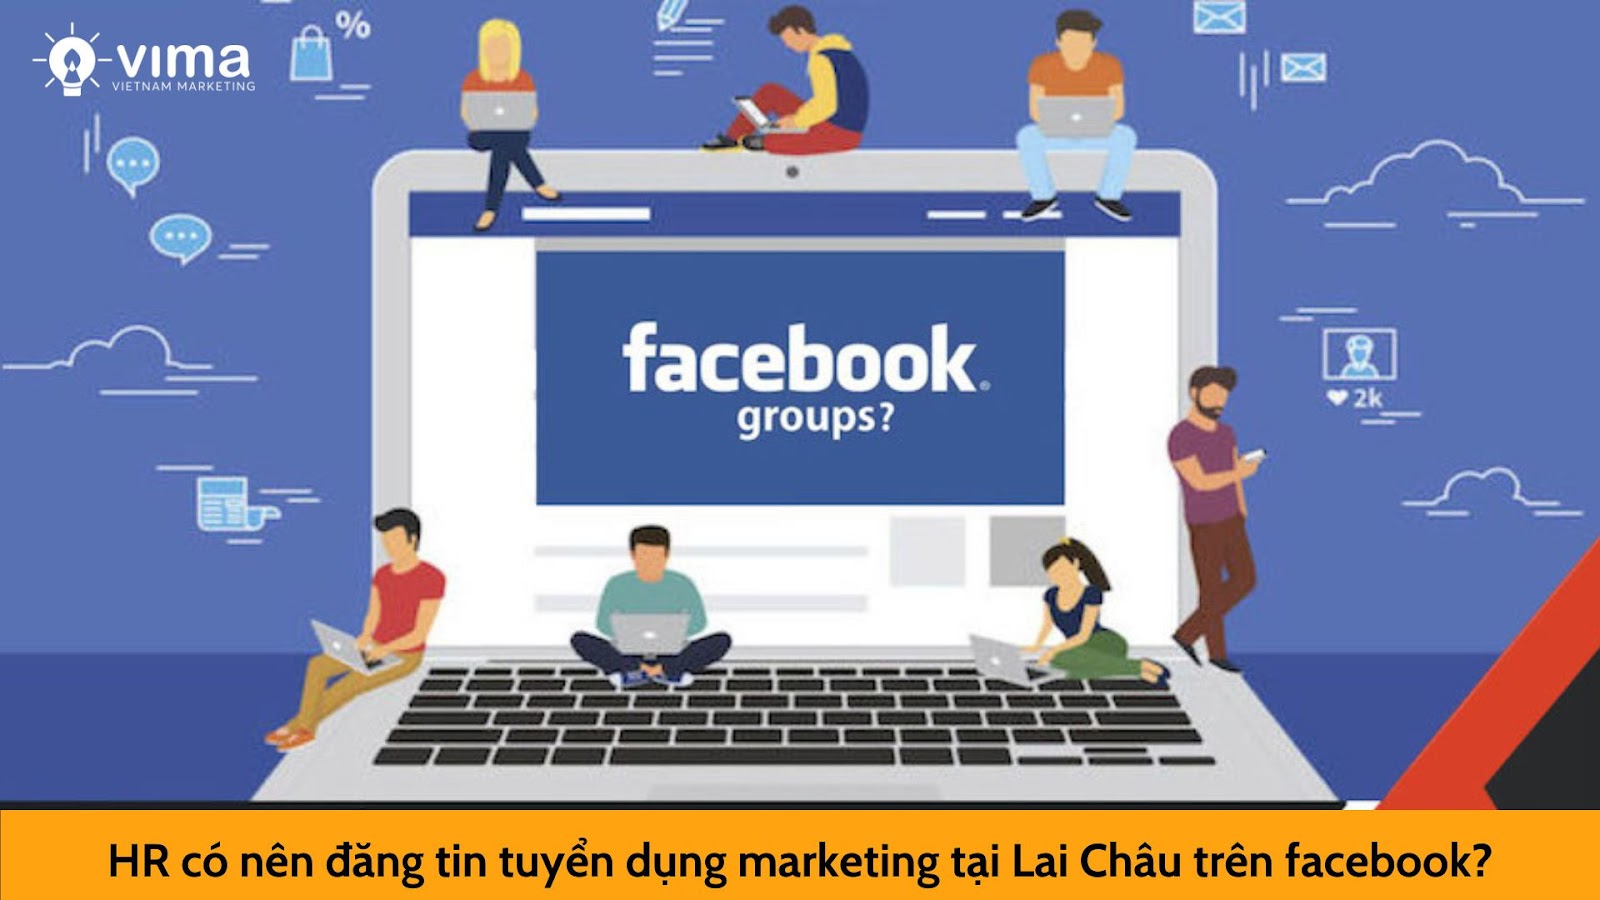 Cách tuyển dụng marketing tại Lai Châu hiệu quả trên Facebook